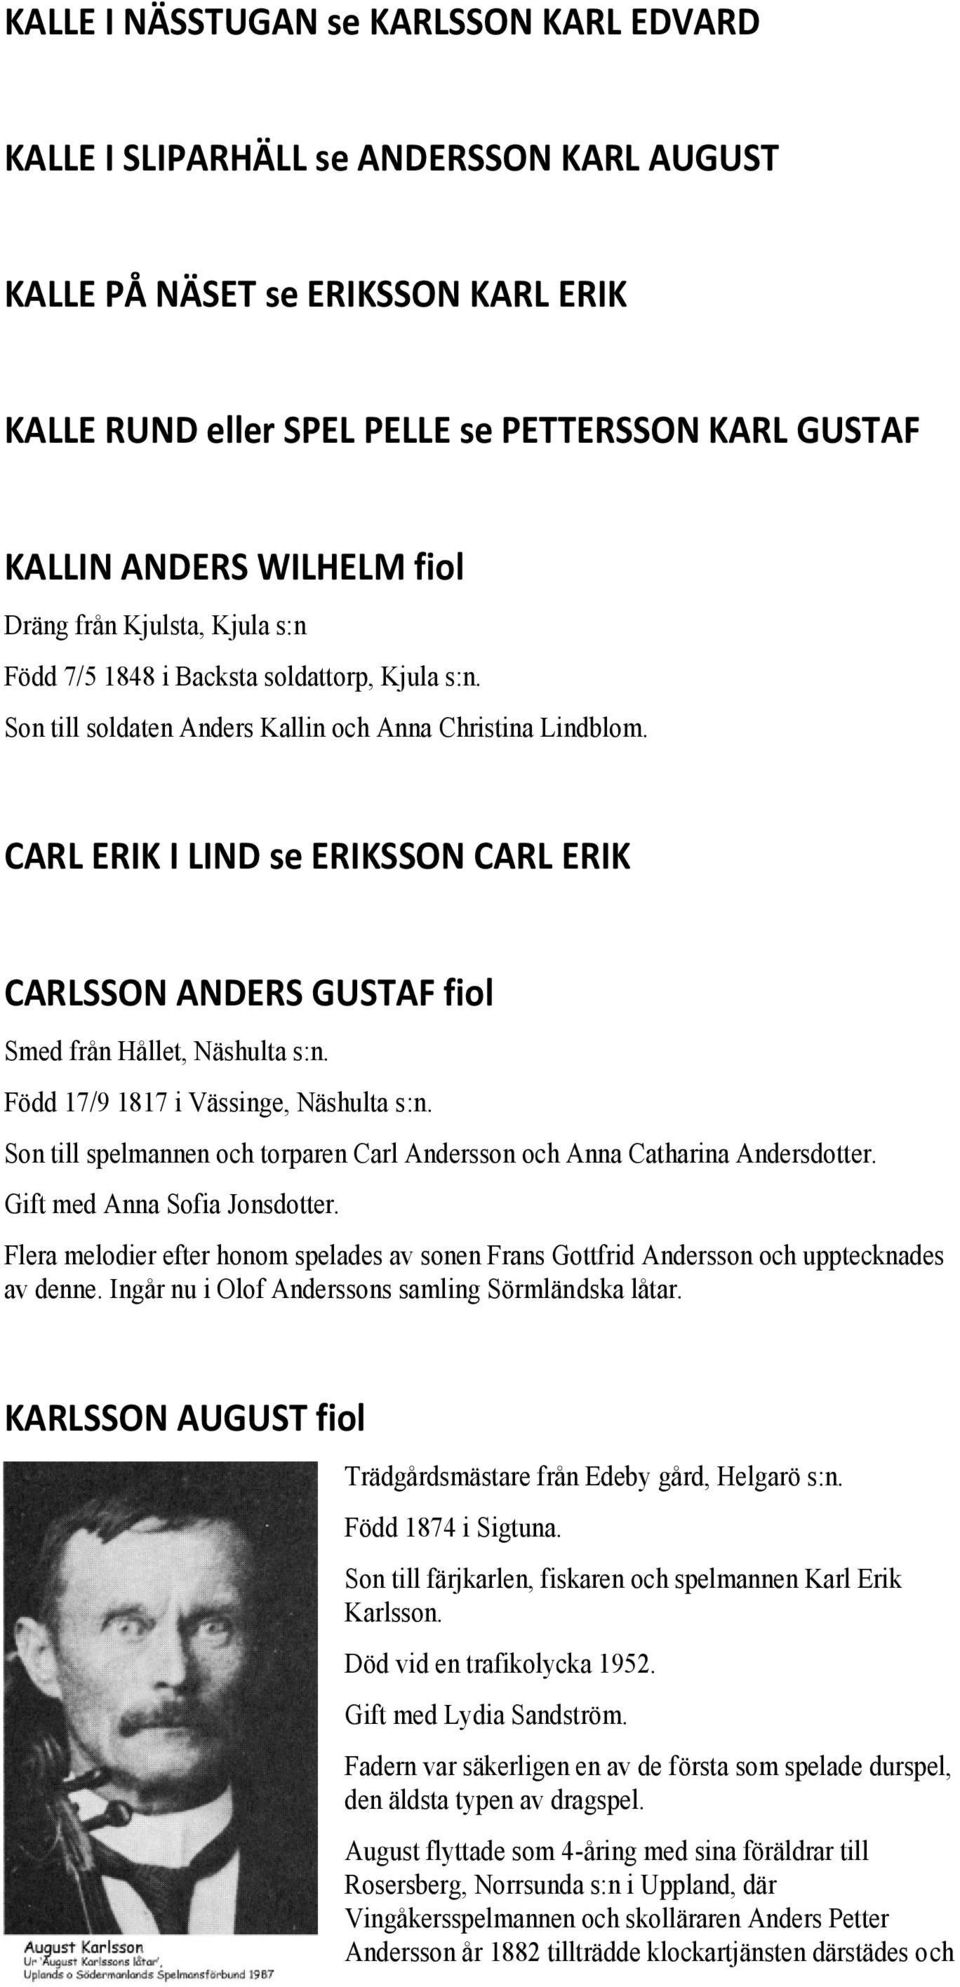 CARL ERIK I LIND se ERIKSSON CARL ERIK CARLSSON ANDERS GUSTAF fiol Smed från Hållet, Näshulta s:n. Född 17/9 1817 i Vässinge, Näshulta s:n.